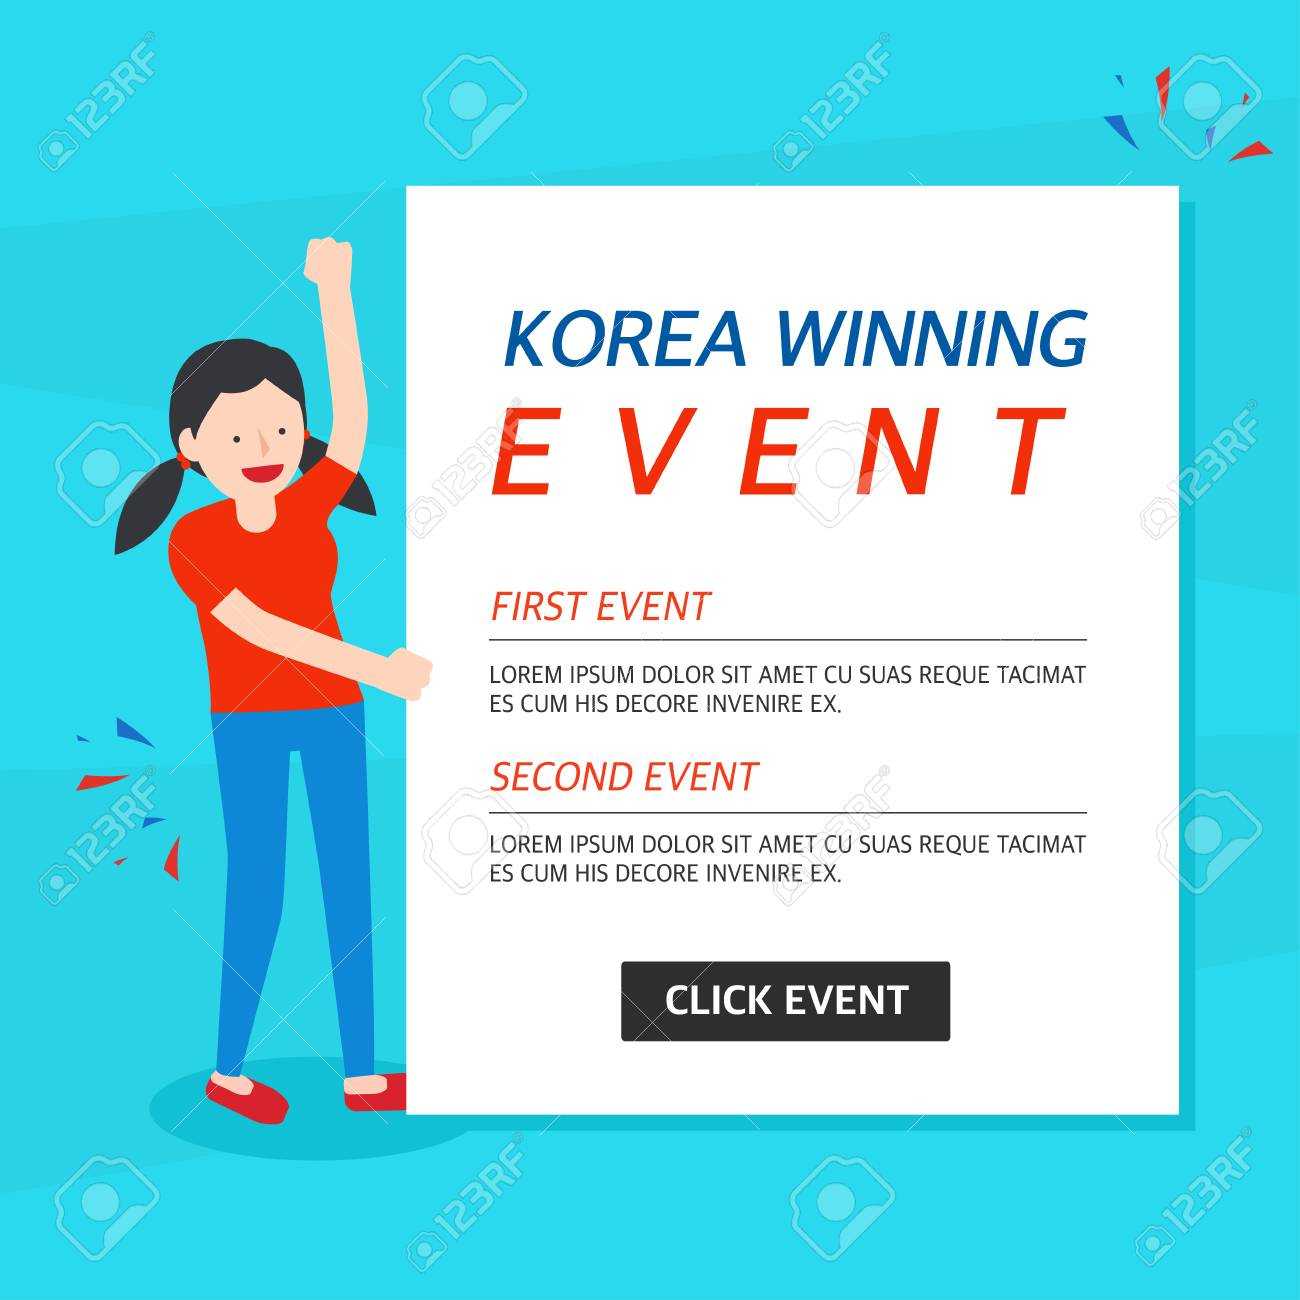 Korea Winning Event Banner Template Inside Event Banner Template